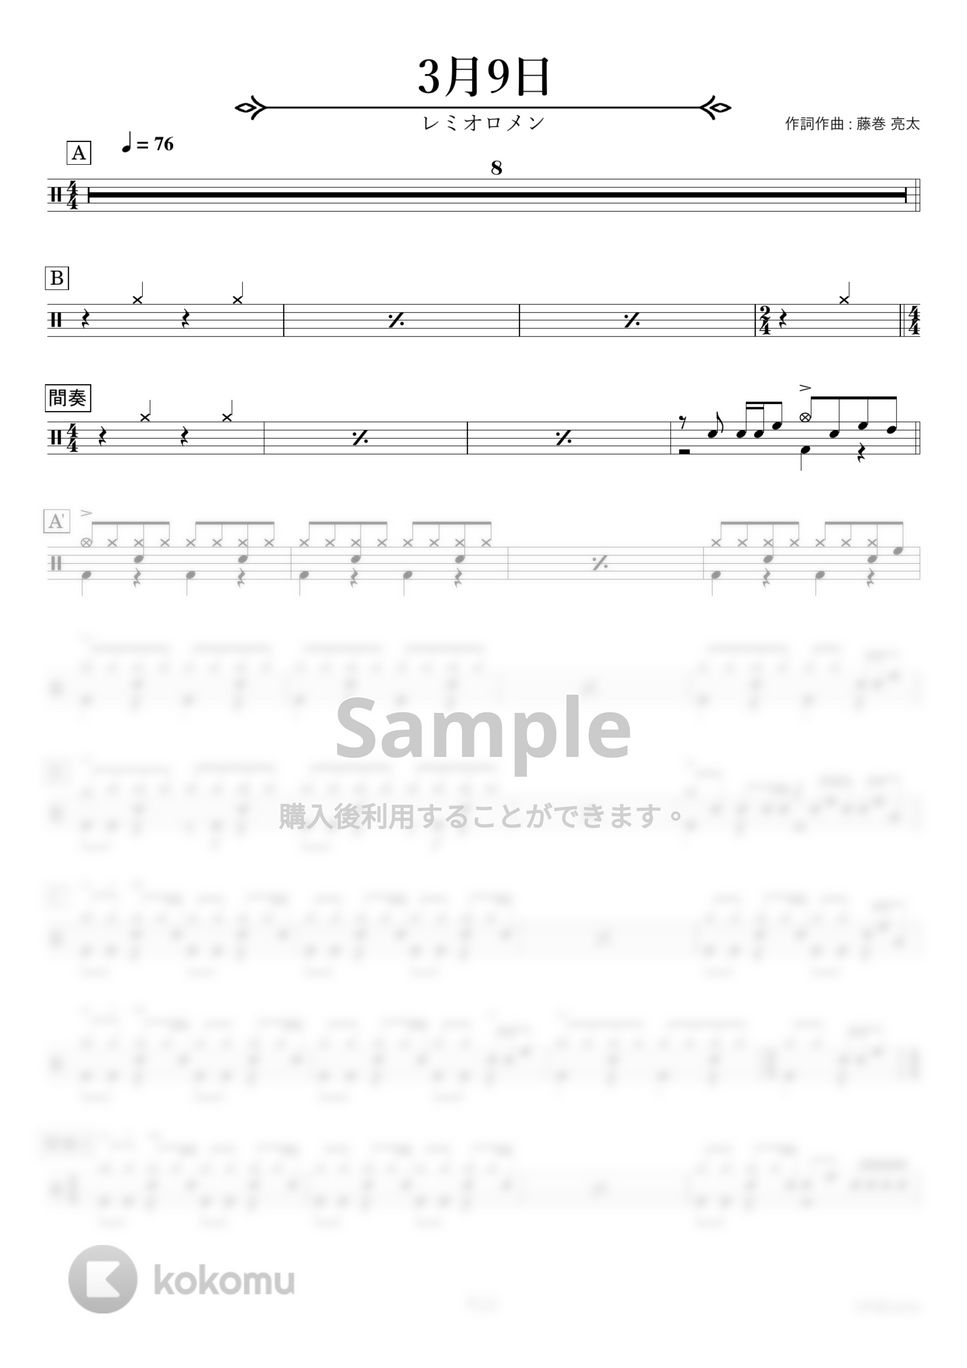 レミオロメン - 3月9日 【ドラム楽譜〔初心者向け〕】.pdf by HYdrums